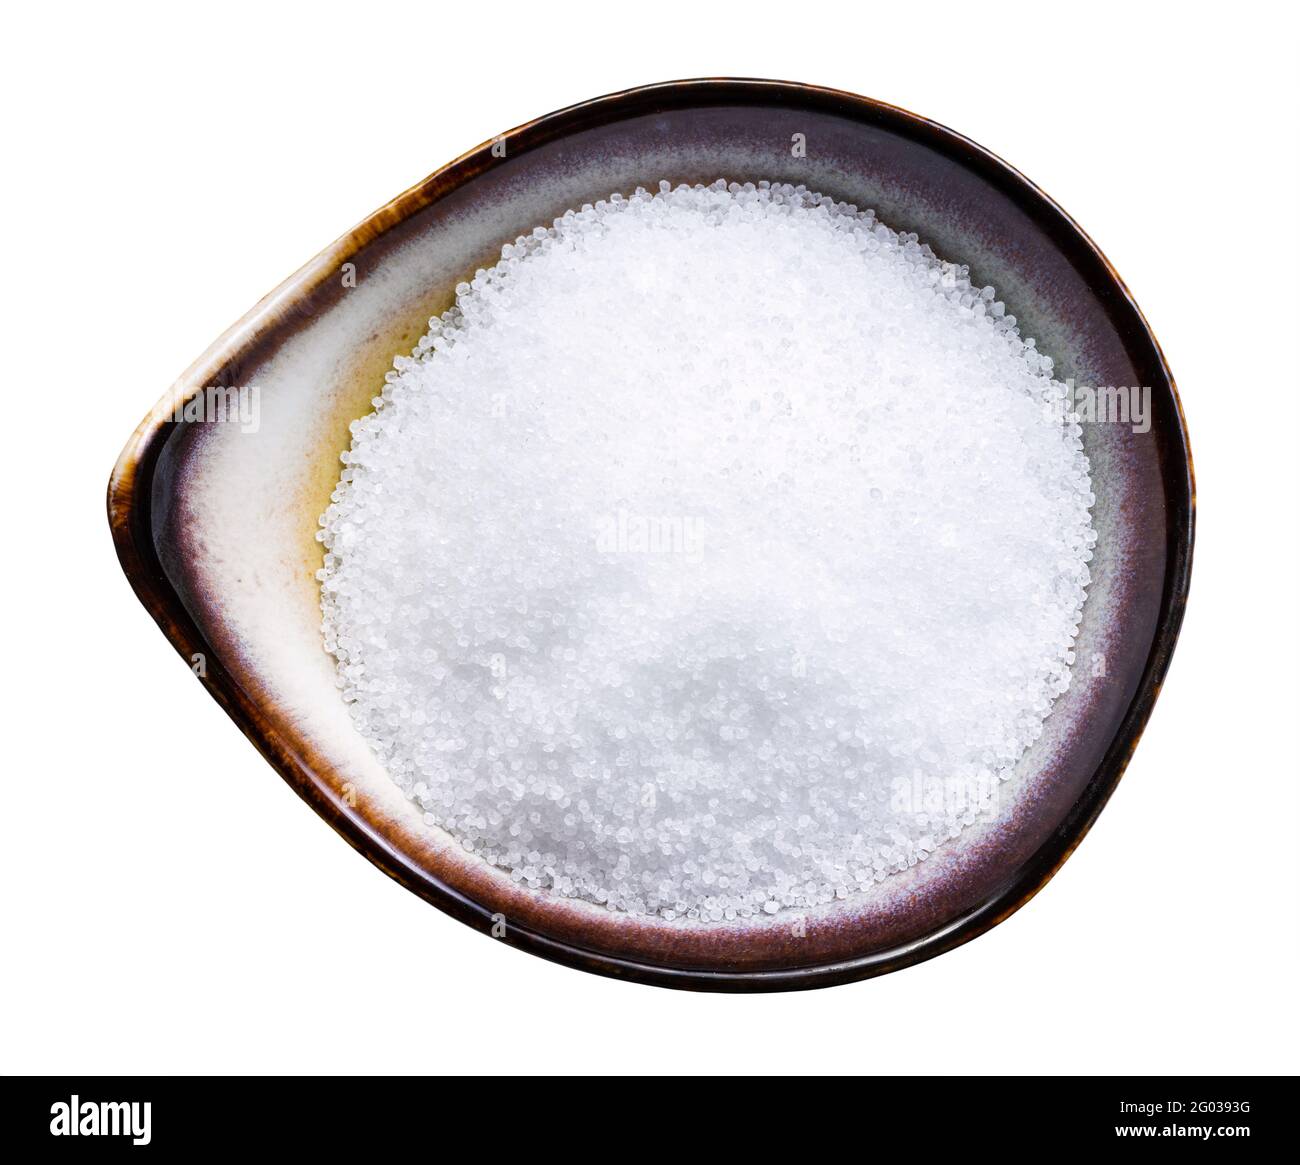 vista dall'alto del dolcificante zuccherino fruttosio in recipiente in ceramica isolato su sfondo bianco Foto Stock